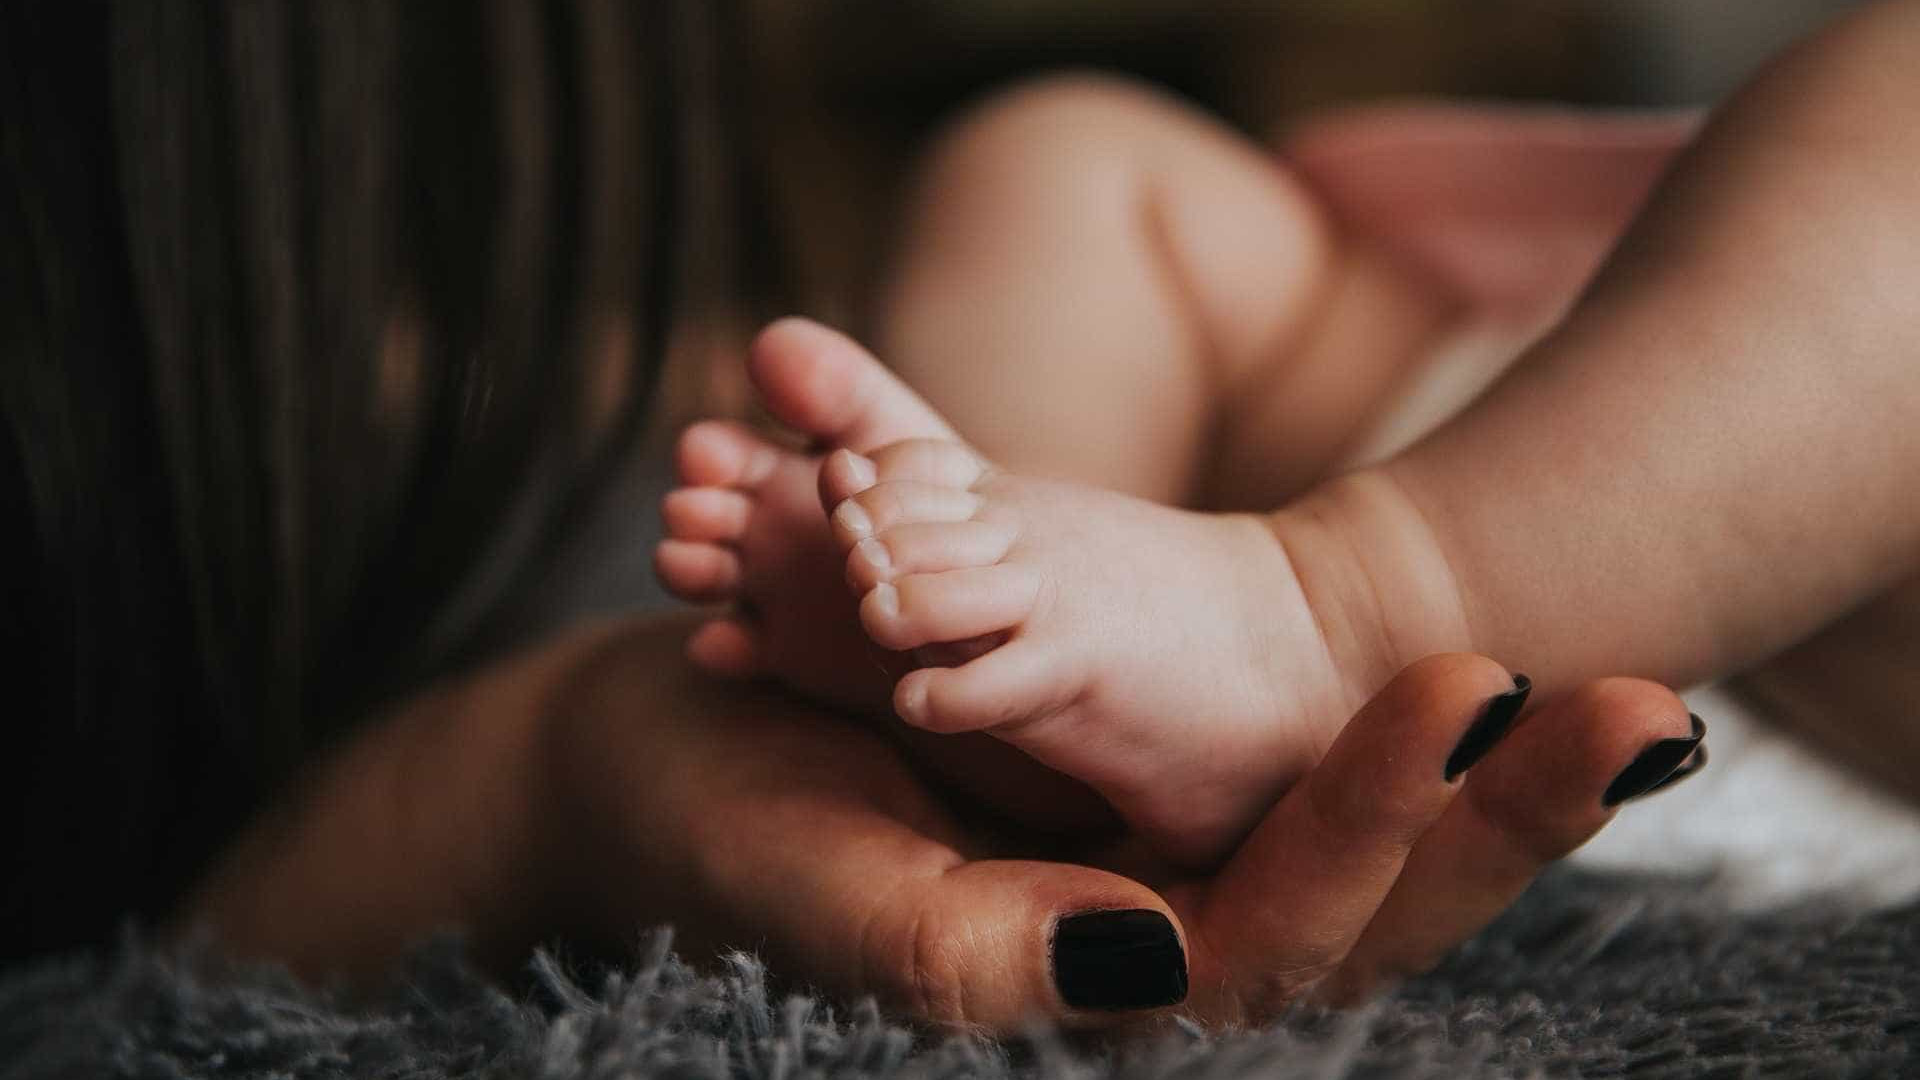 Filho de pessoa trans, bebê terá documento sem identificação de sexo
